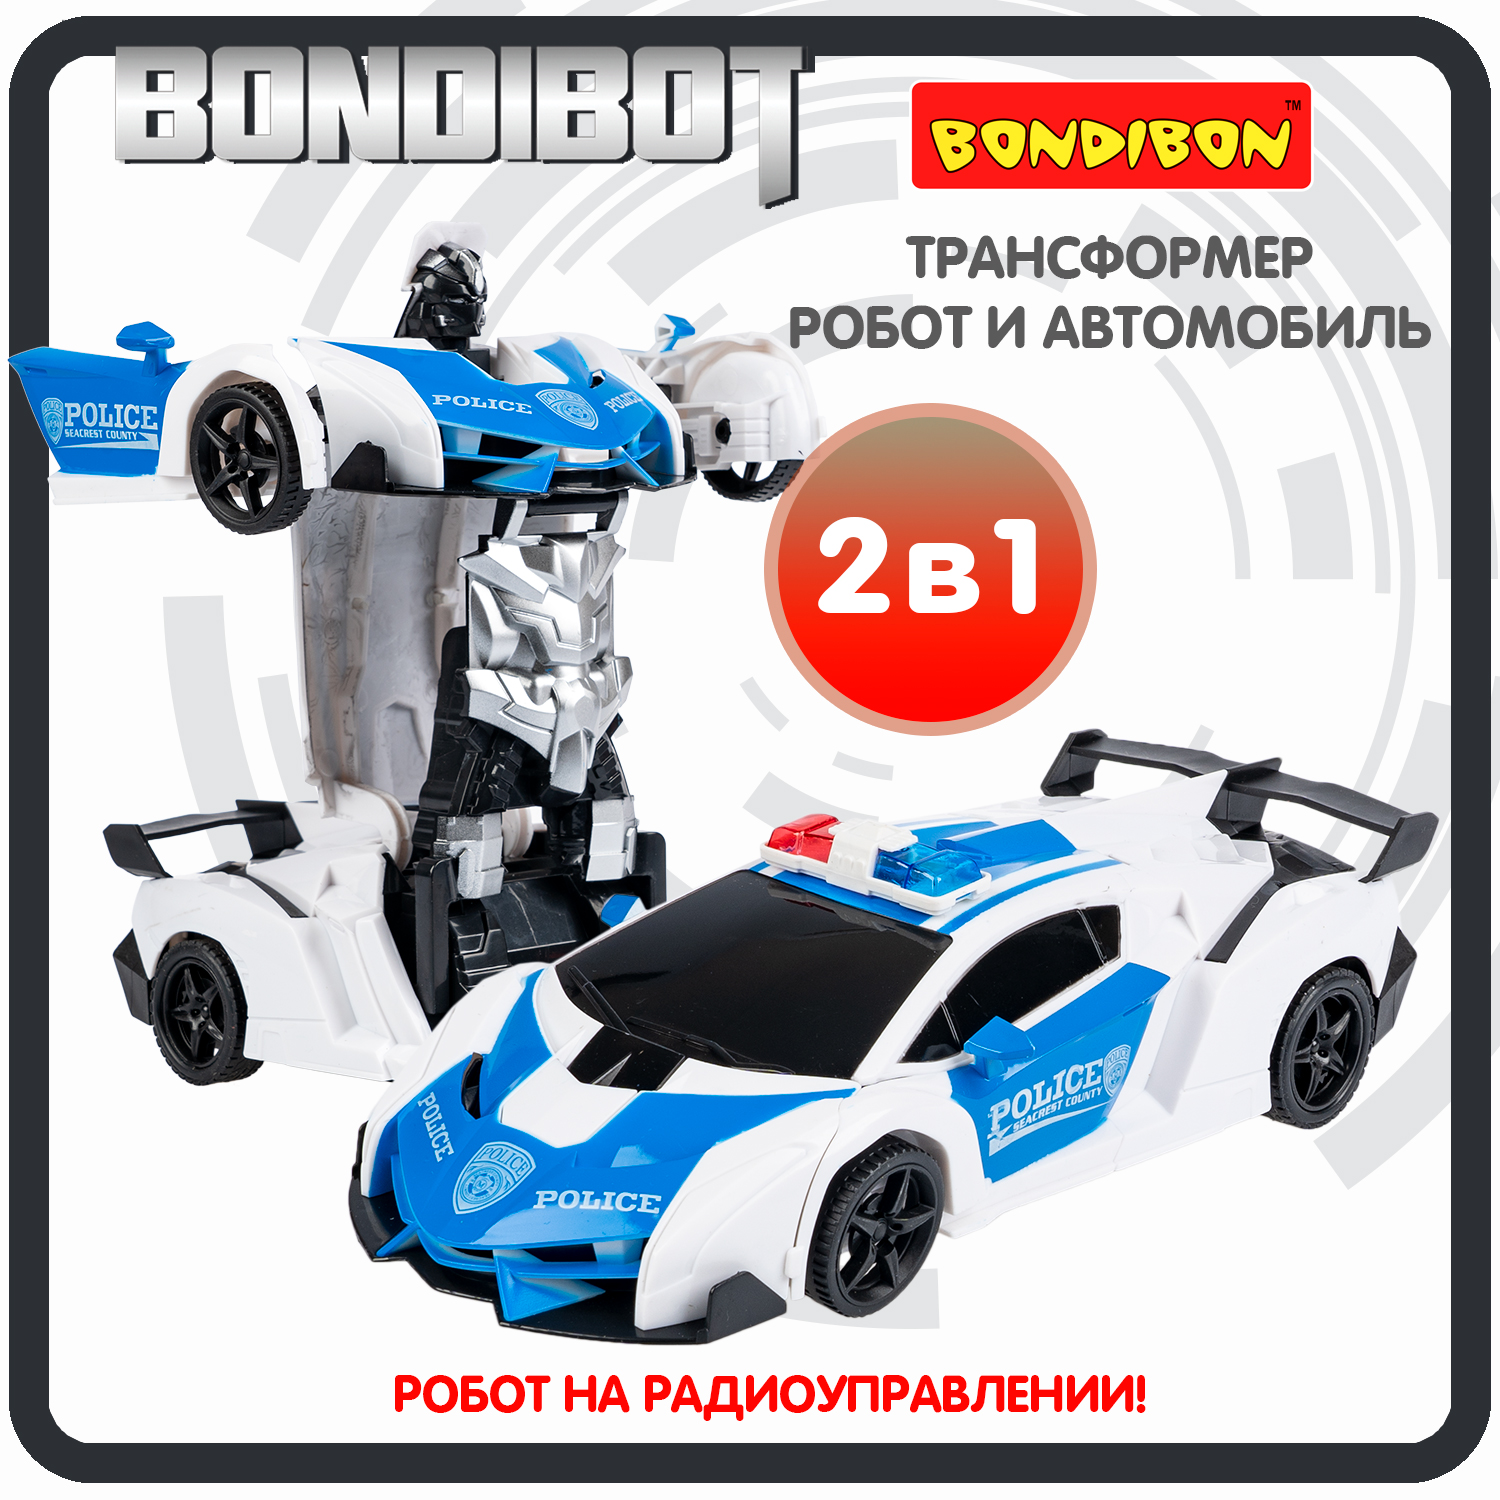 Трансформер 2в1 BONDIBOT на радиоуправлении робот и автомобиль / ВВ6067